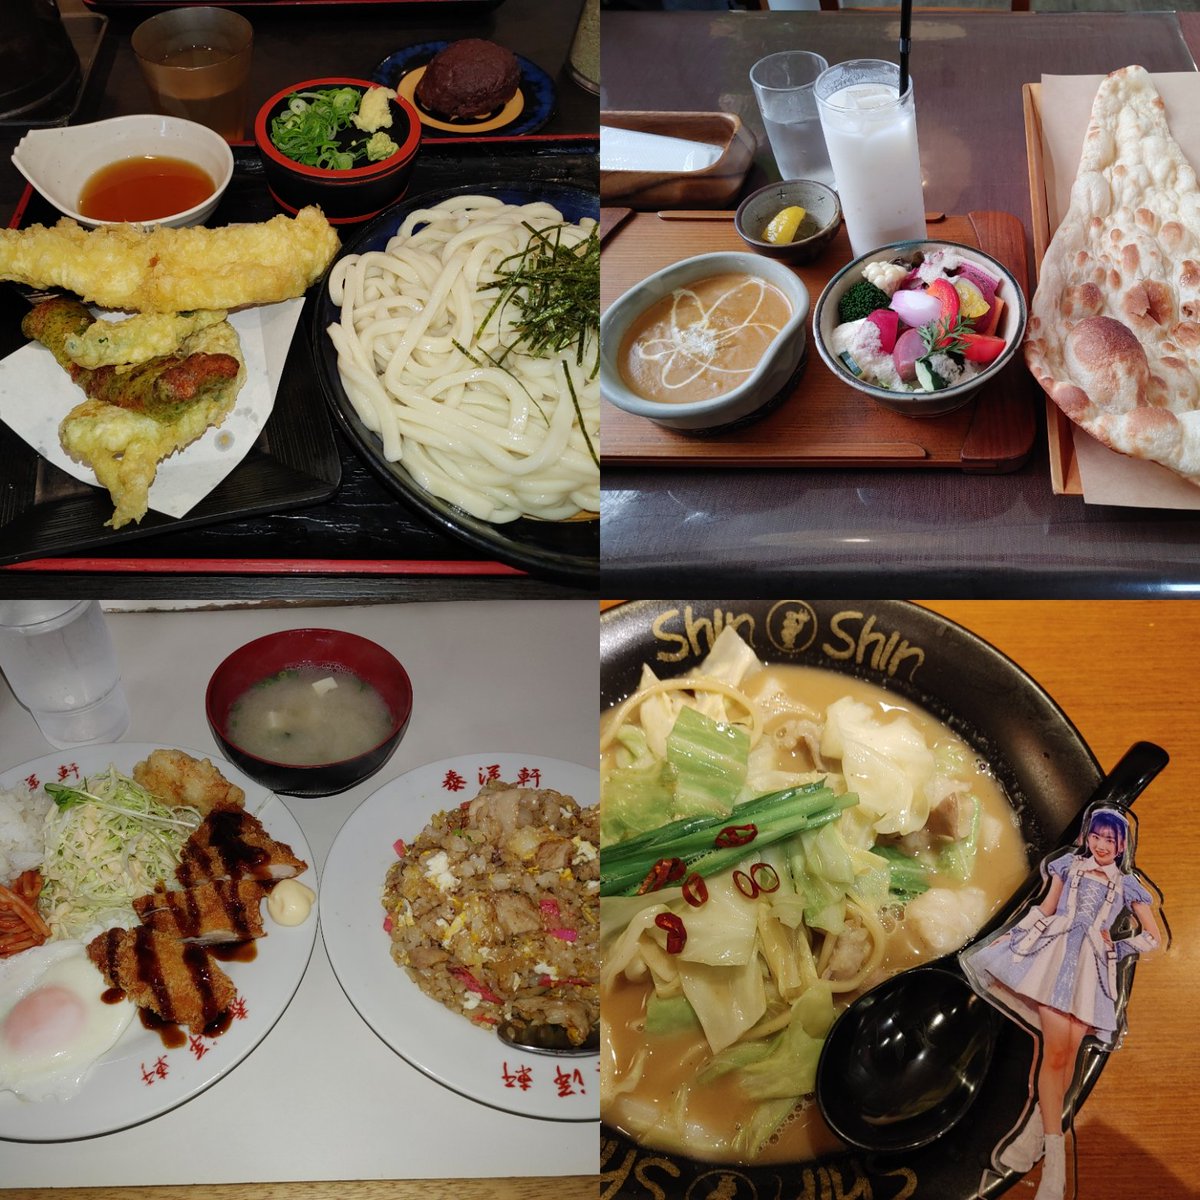 れみー💖
こんにちは👋😆✨☔→🌥️
福岡から帰ってきたら朝から忙しくて出遅れました😓
福岡ではラーメン、うどん、焼き肉、チャーハン、カレーと美味しいもの🤤もいっぱい食べれて大満足！
ファンミーティングで福岡に行ったら美味しいものいっぱい食べてください🙌　#徳永羚海　#れみれたー